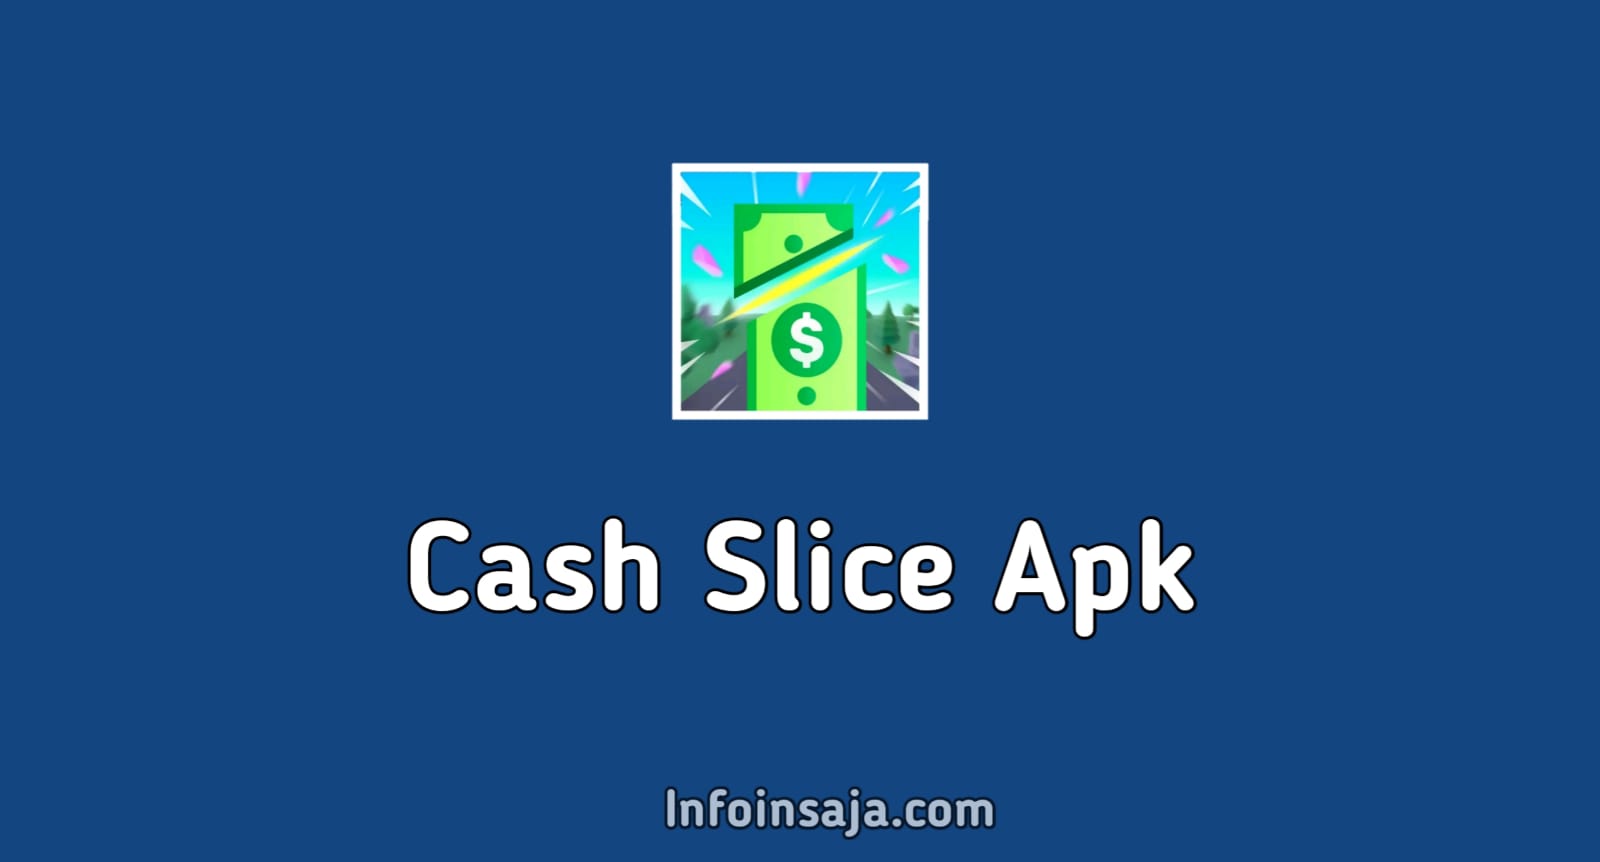 Cash Slice Apk